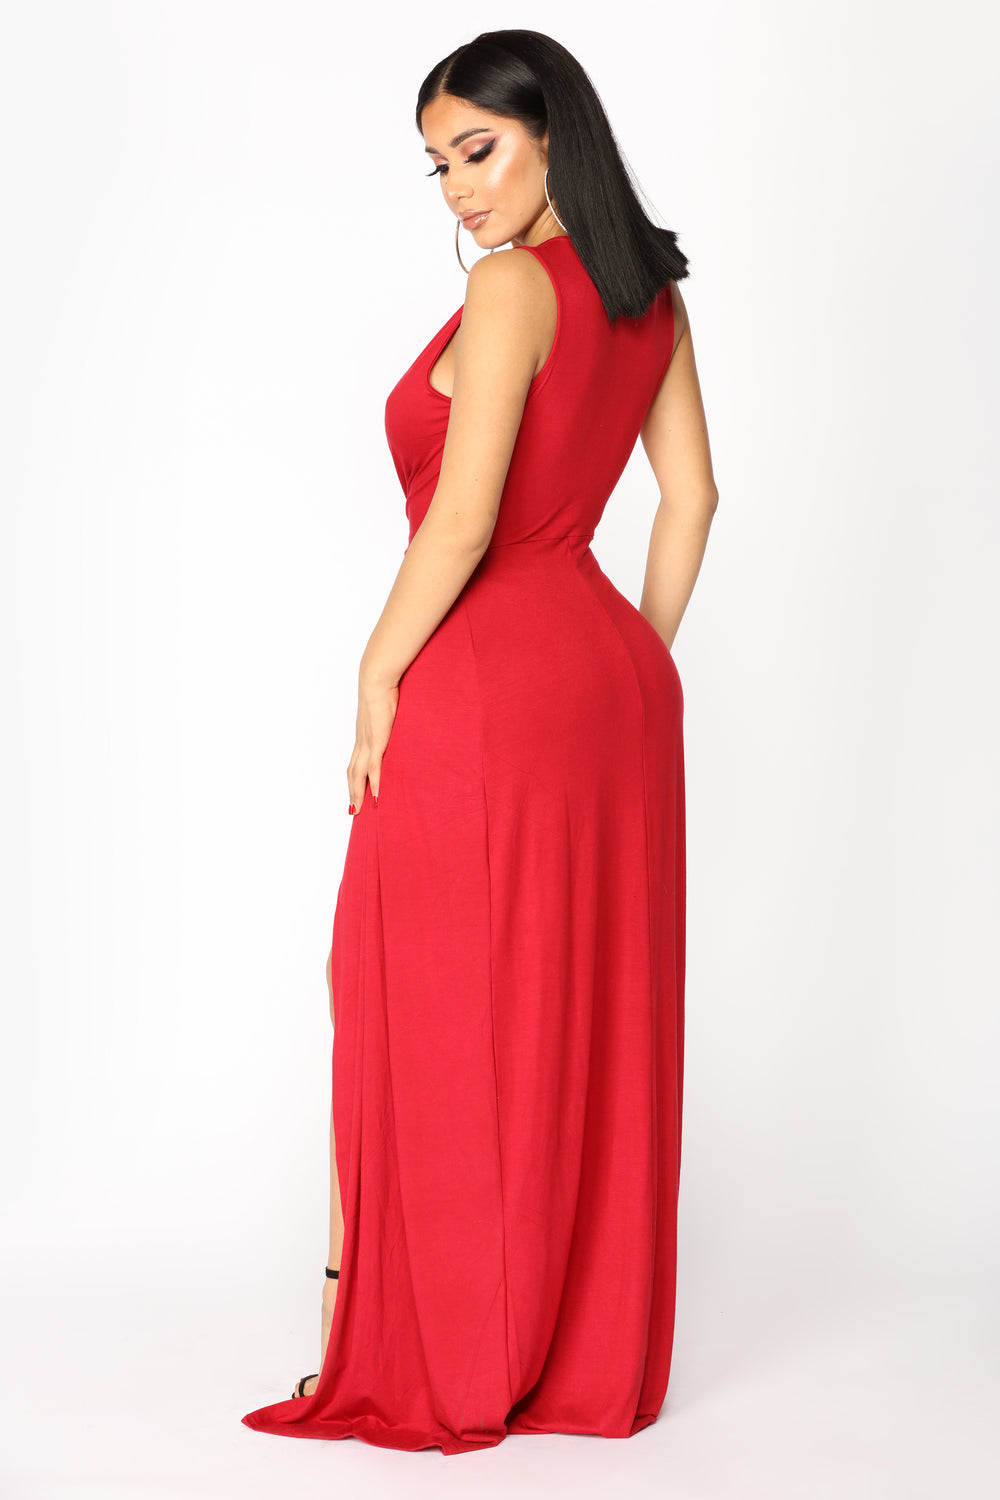 Zaira Knot Dress - Red